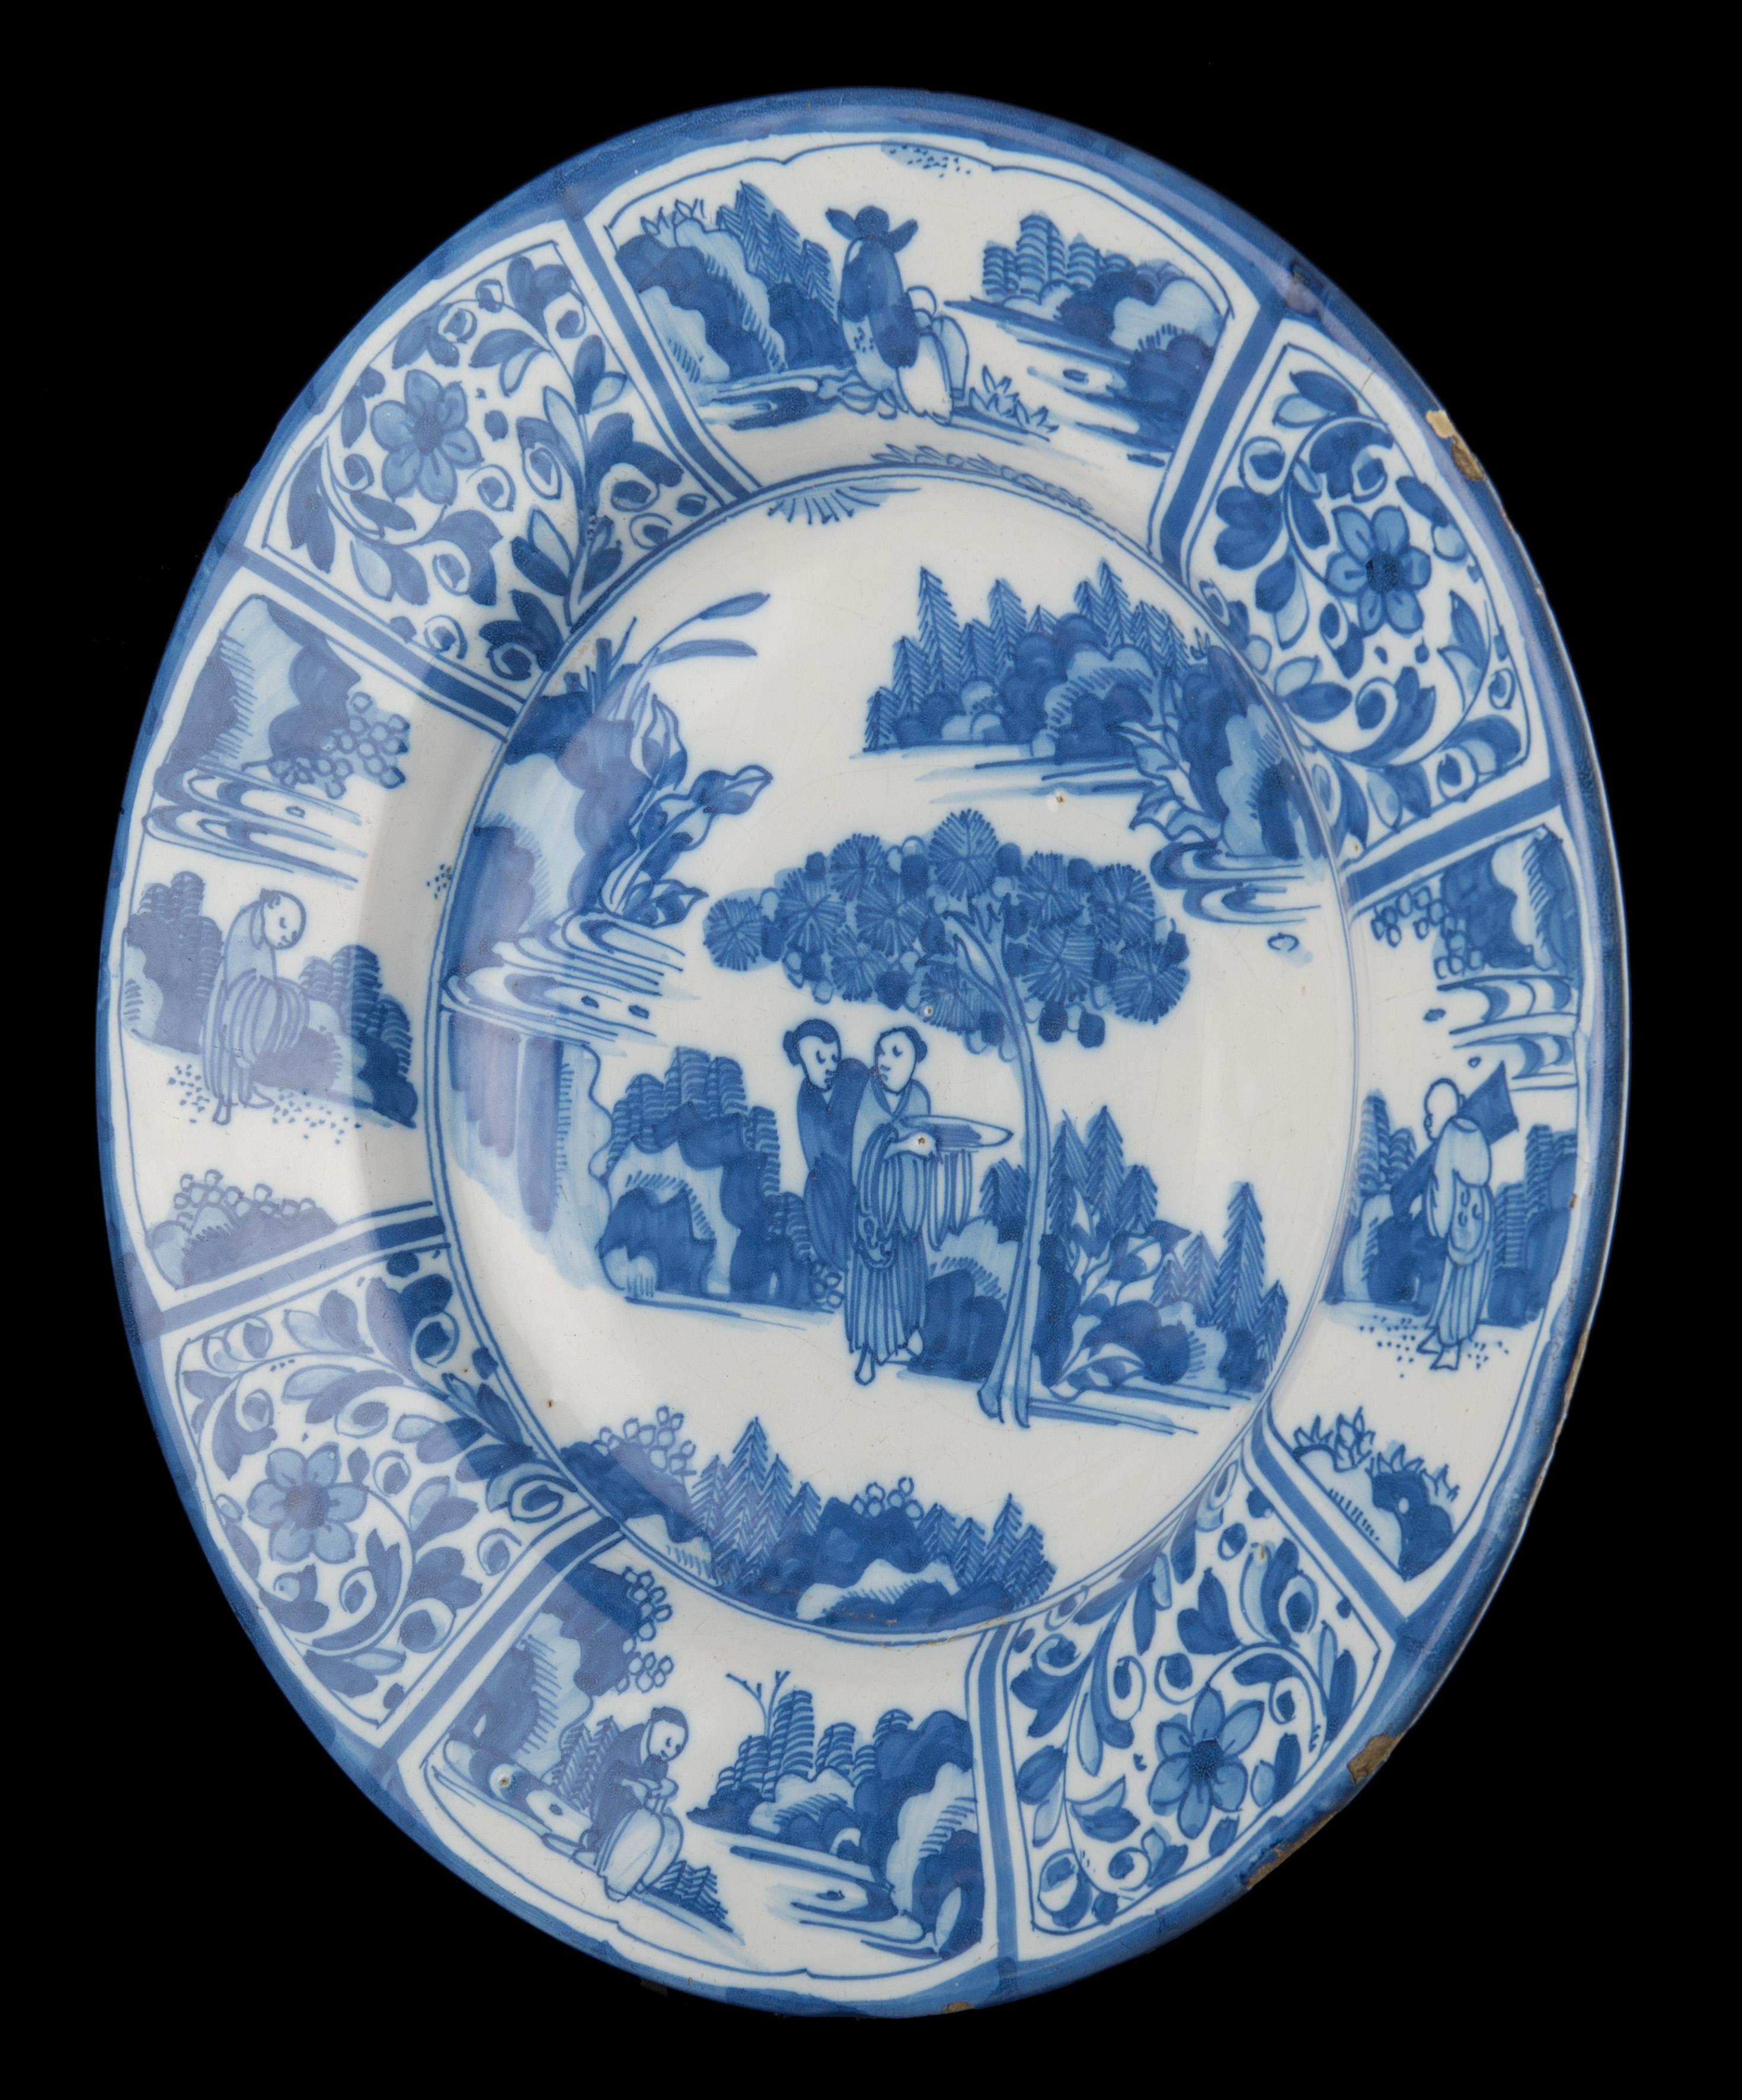 Plat de chinoiserie bleu et blanc. Delft, vers 1670 

Plat bleu et blanc à large rebord, le centre peint de deux Chinois conversant sous un arbre dans un paysage oriental. Un homme porte un plat. La bordure à huit panneaux est décorée